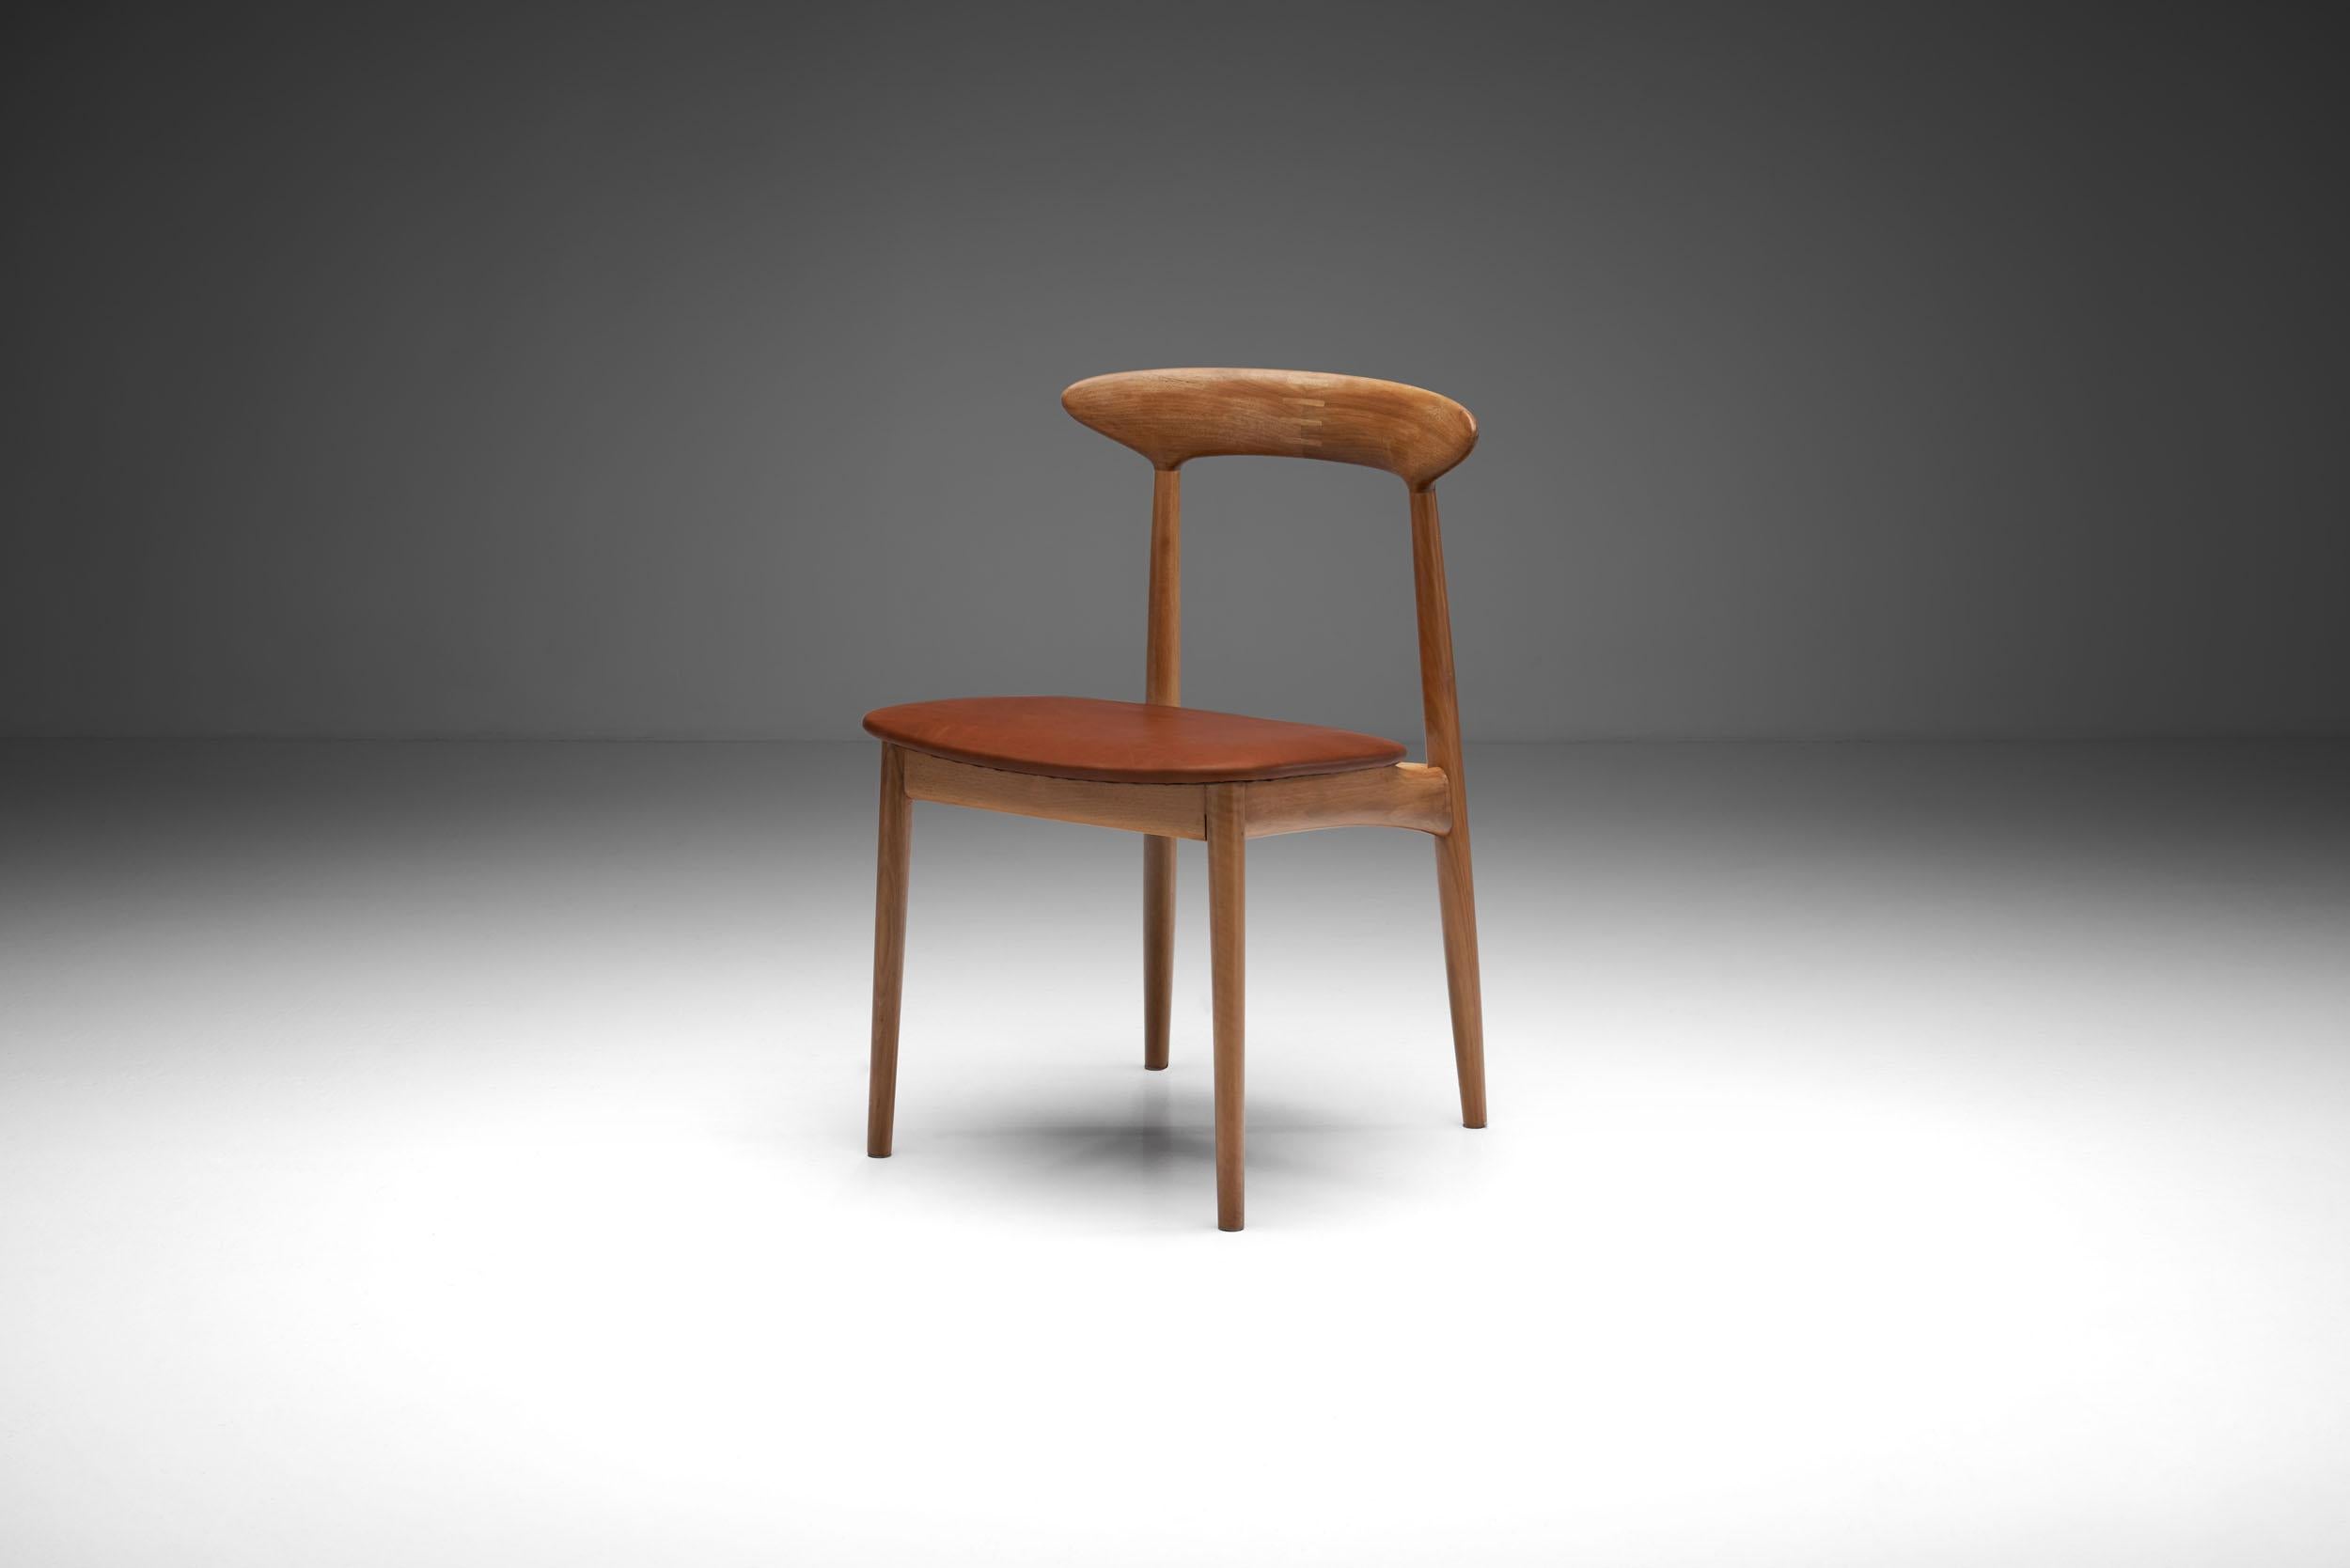 Chaise en noyer du designer danois Kurt Østervig, fabriquée par Brande Mobelindustri Danemark dans les années 1950.

Cette chaise, comme ses chaises de salon 57a, est l'un des modèles de chaise les plus célèbres d'Østervig, avec des articulations